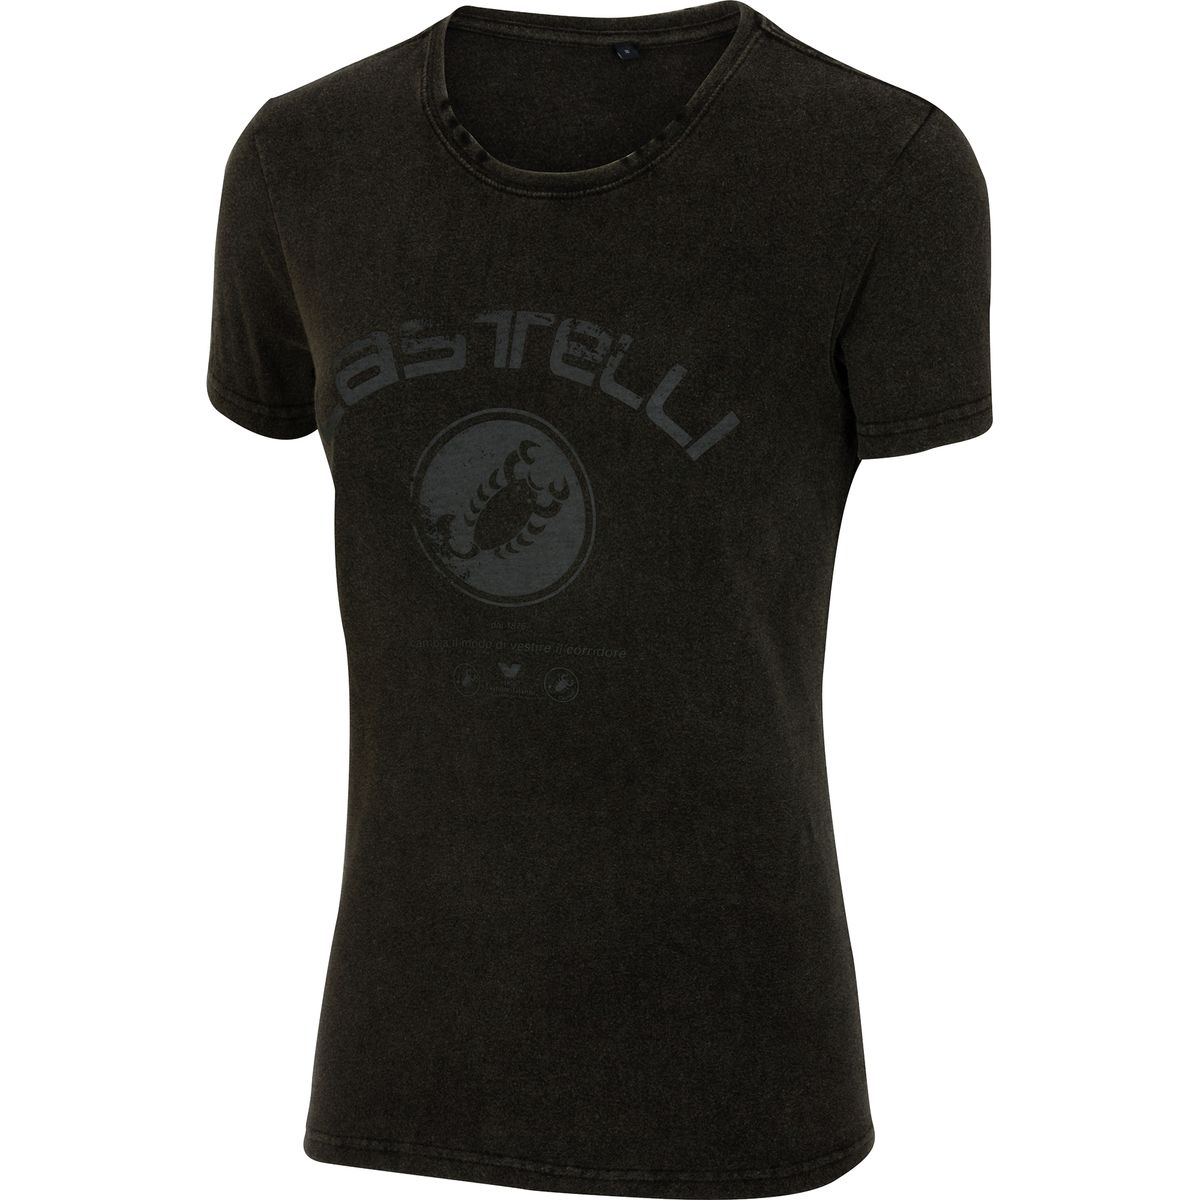 Castelli T-Shirt - Women's